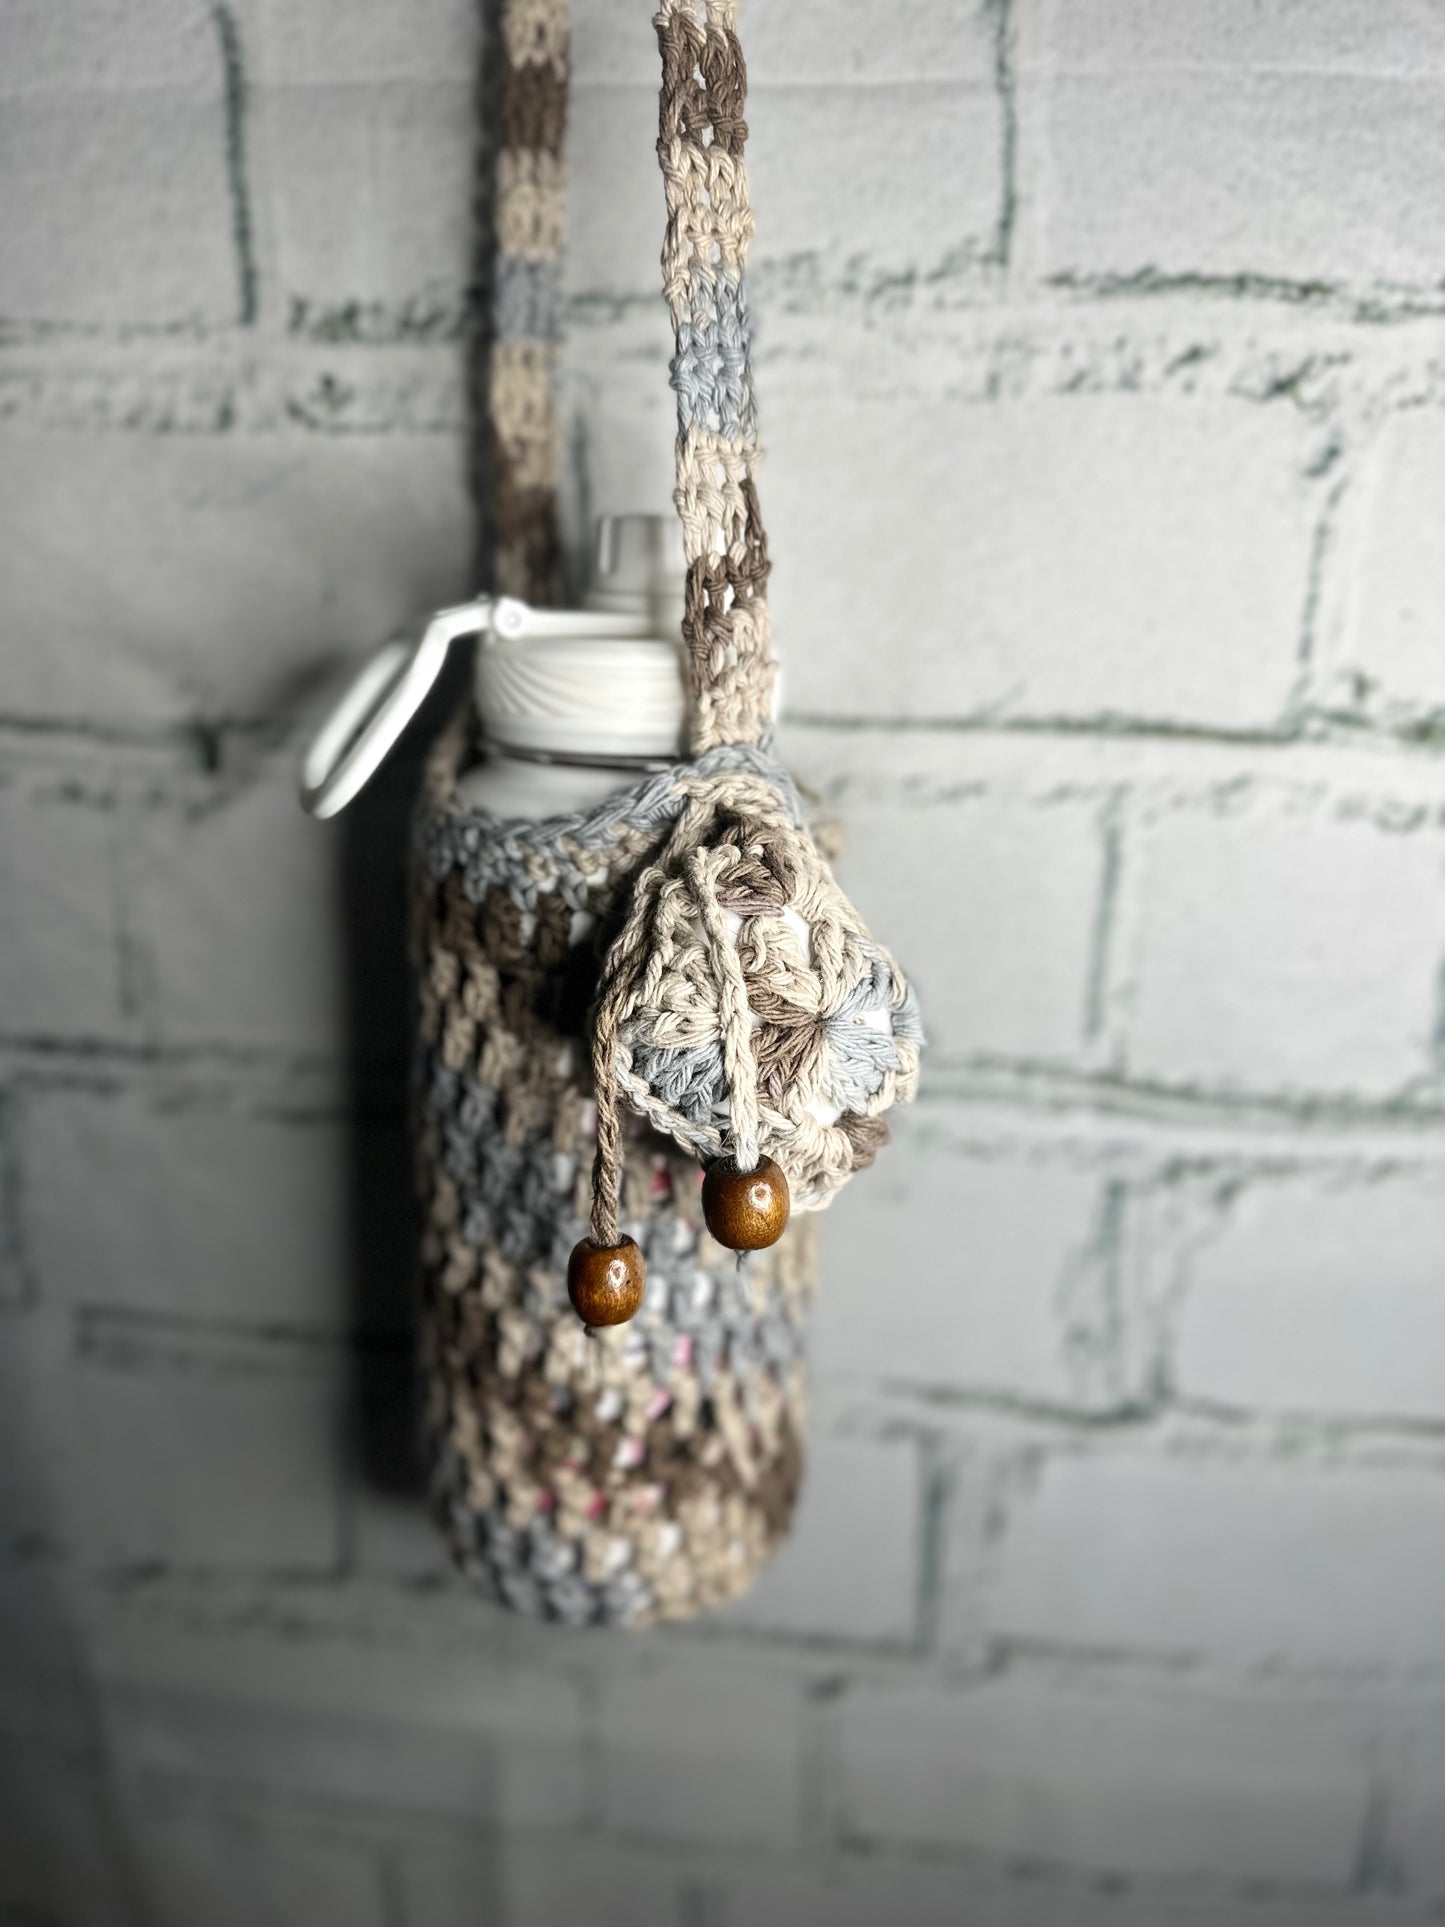 Crochet bottle holder